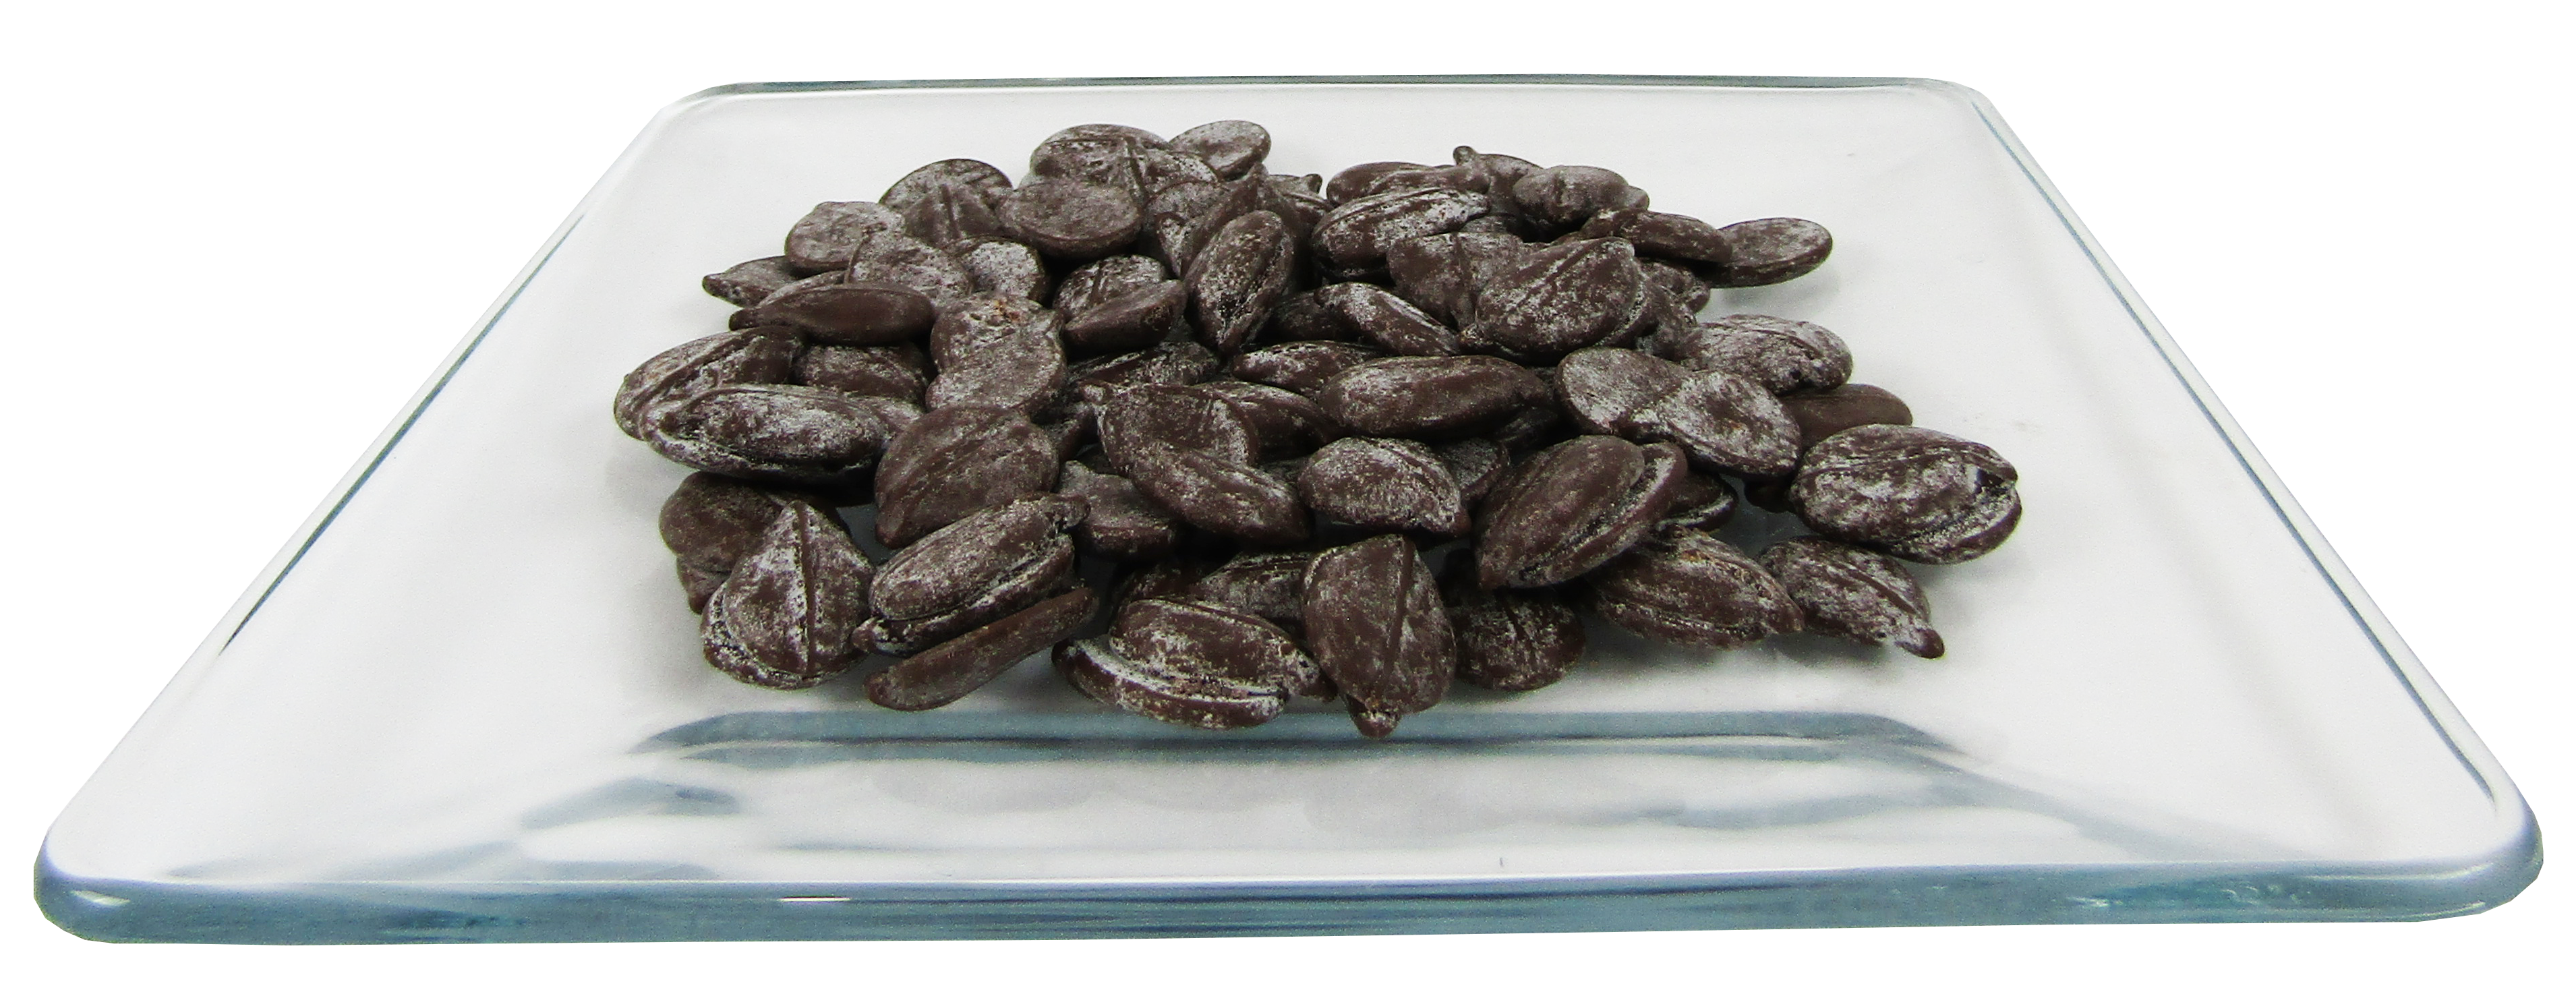 Chocolate Para Fuente Alpezzi 1 Kg - Materias Primas Panadería y Pastelería